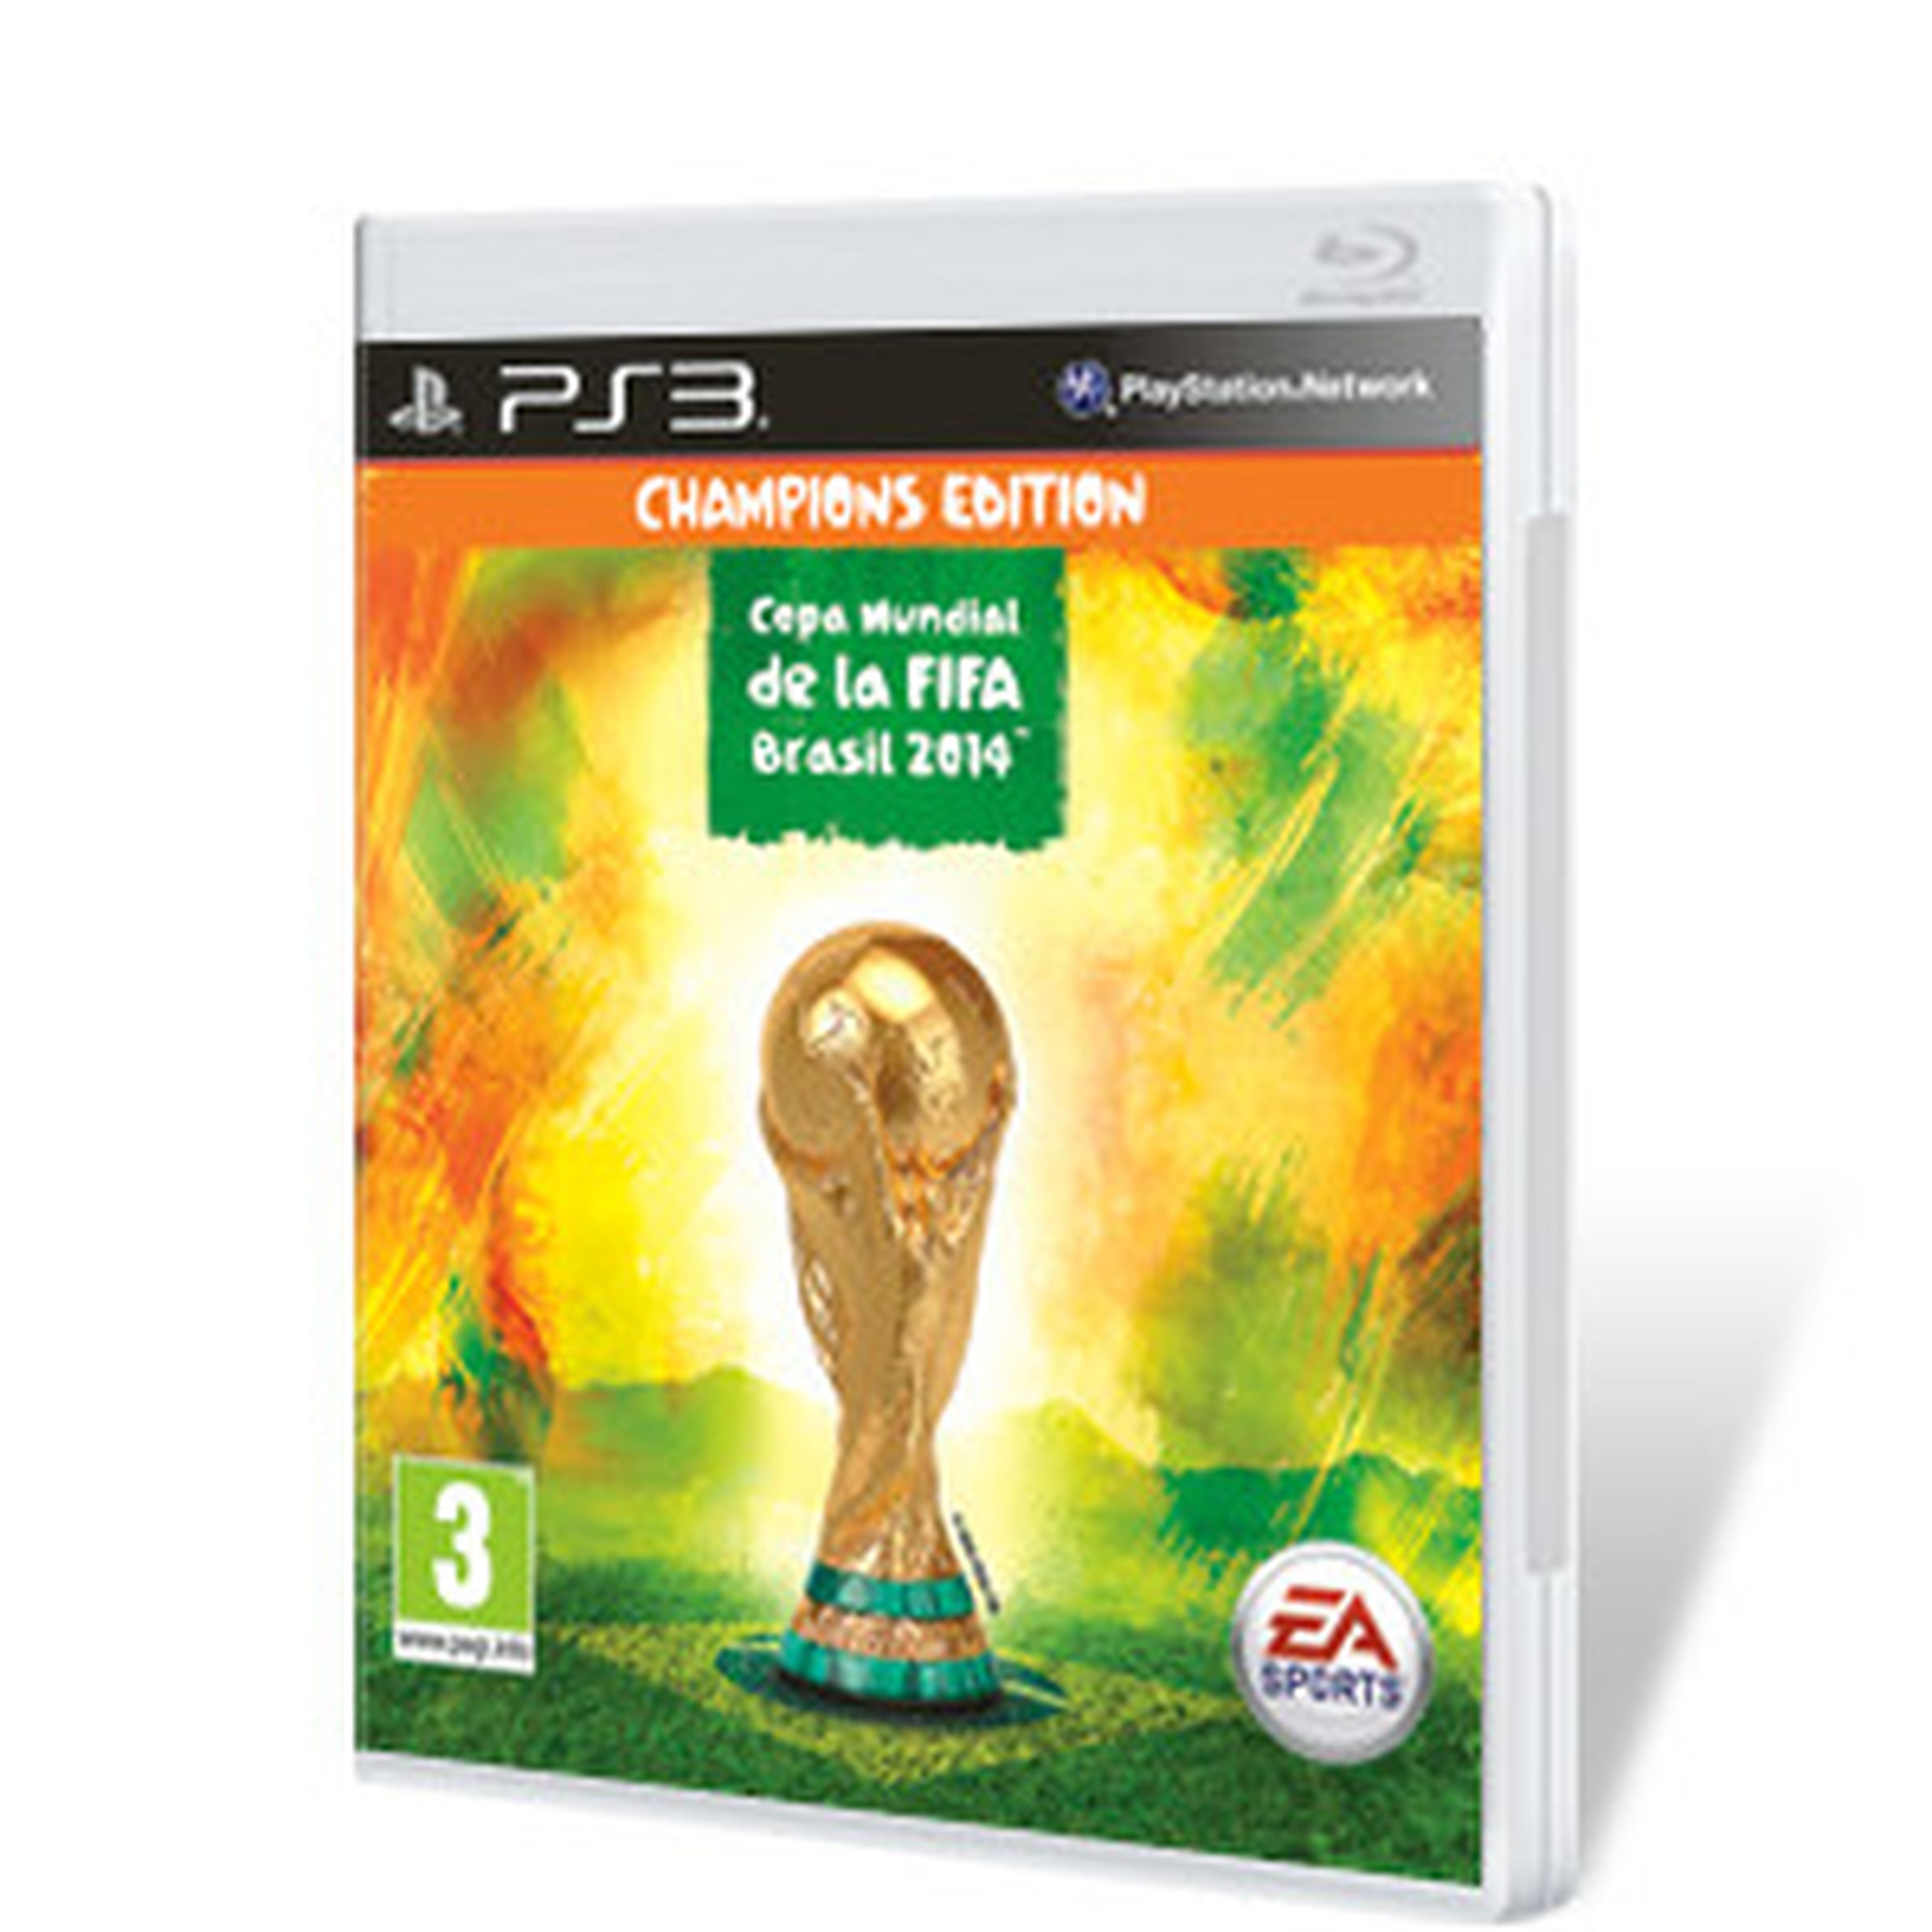 Copa Mundial de la FIFA Brasil 2014 para PS3